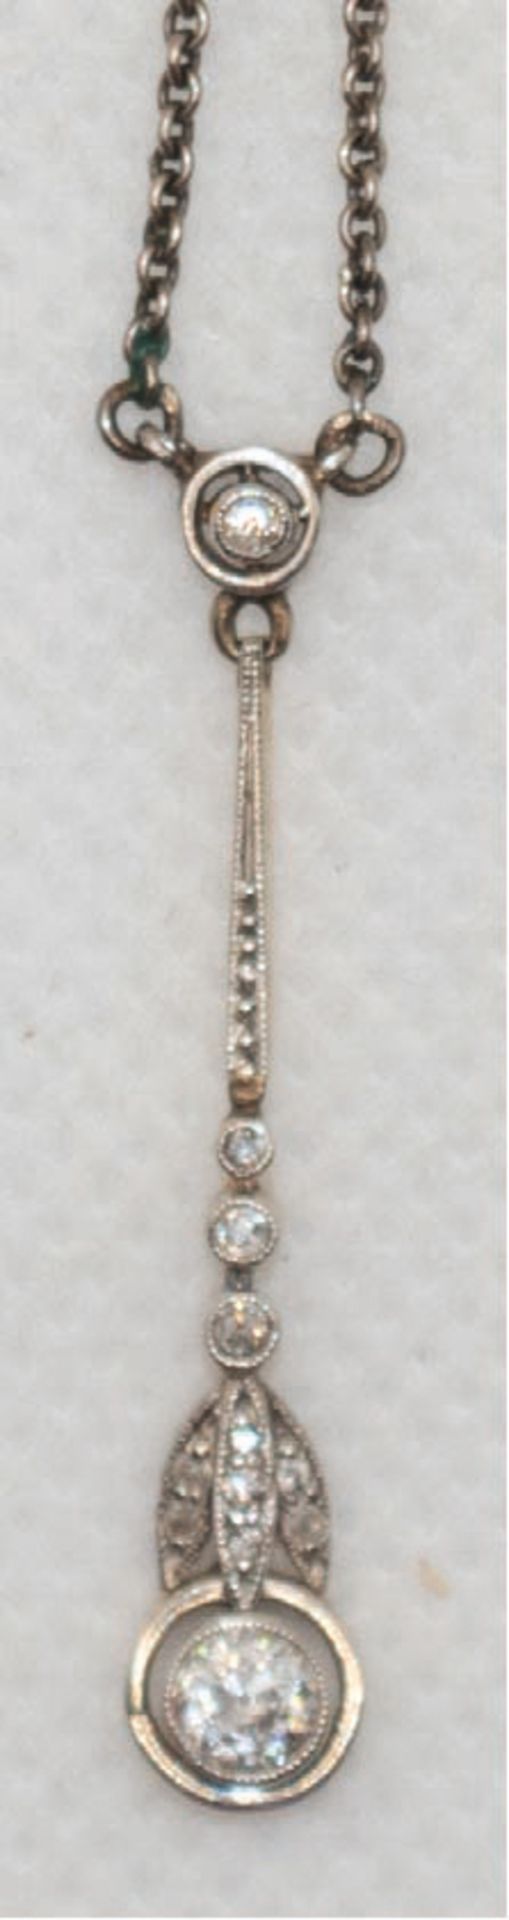 Jugendstil-Diamant-Collier, Gold/Silber, Abhang in Form einer Blume, besetzt mit 12 Diamanten, L. 3